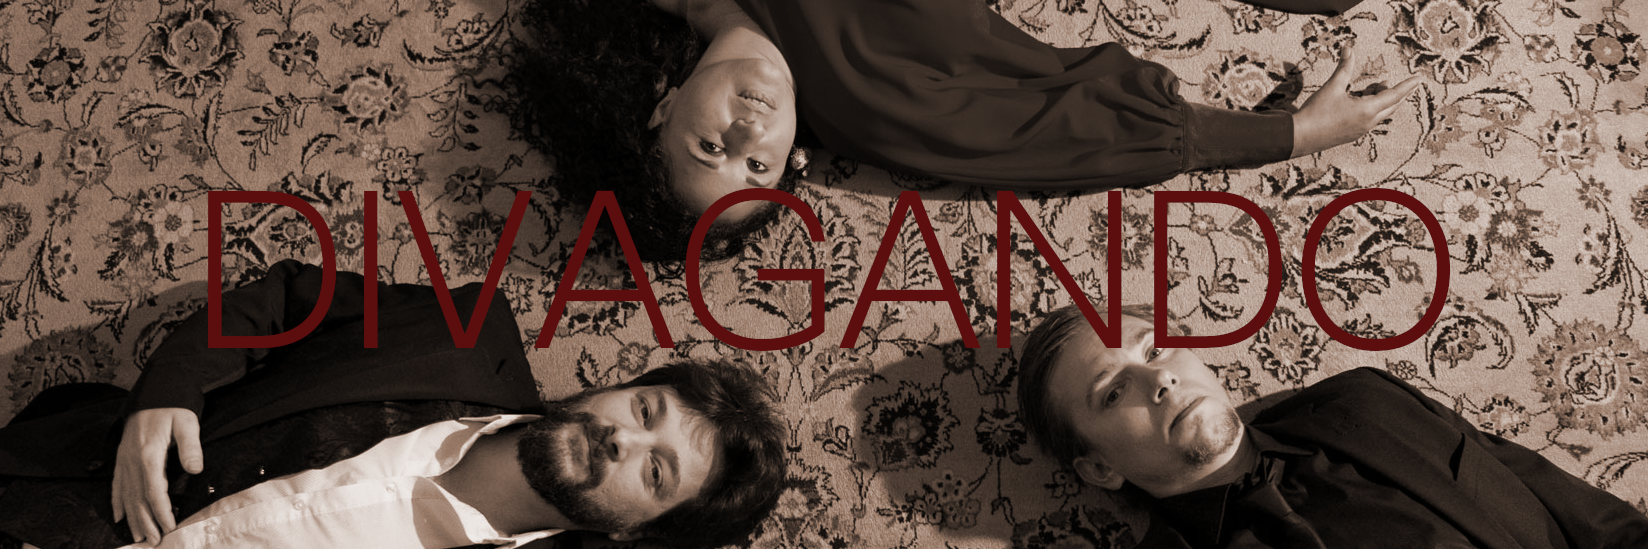 Divagando, groupe de musique Latino en représentation à Hérault - photo de couverture n° 2